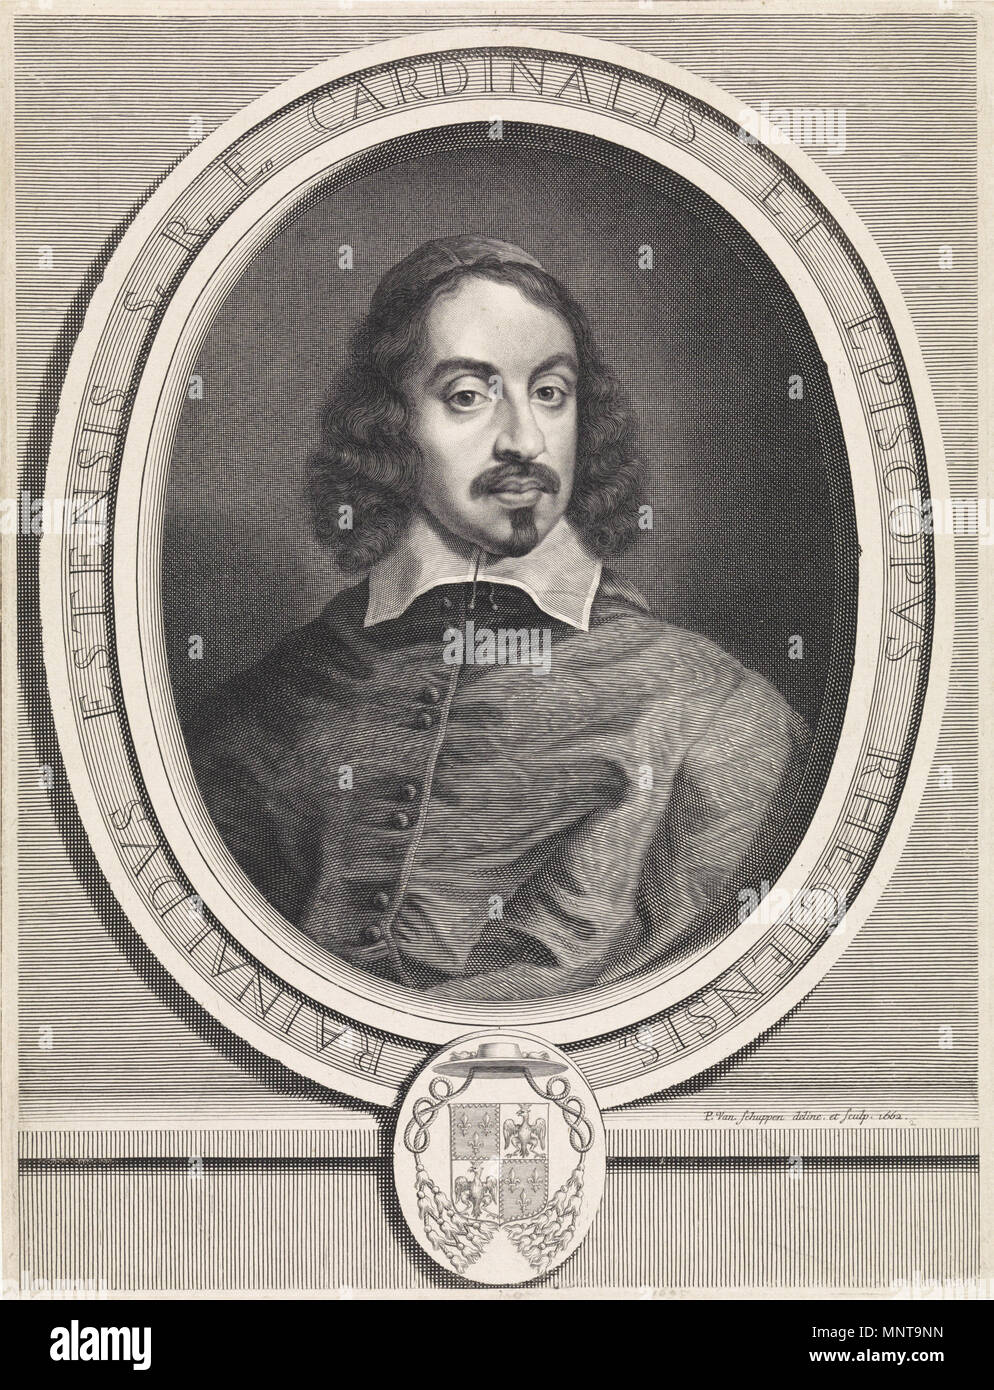 English: Portrait of Rinaldo d'Este   February 1662.   994 Pieter van Schuppen - Portrait of Rinaldo d'Este Stock Photo